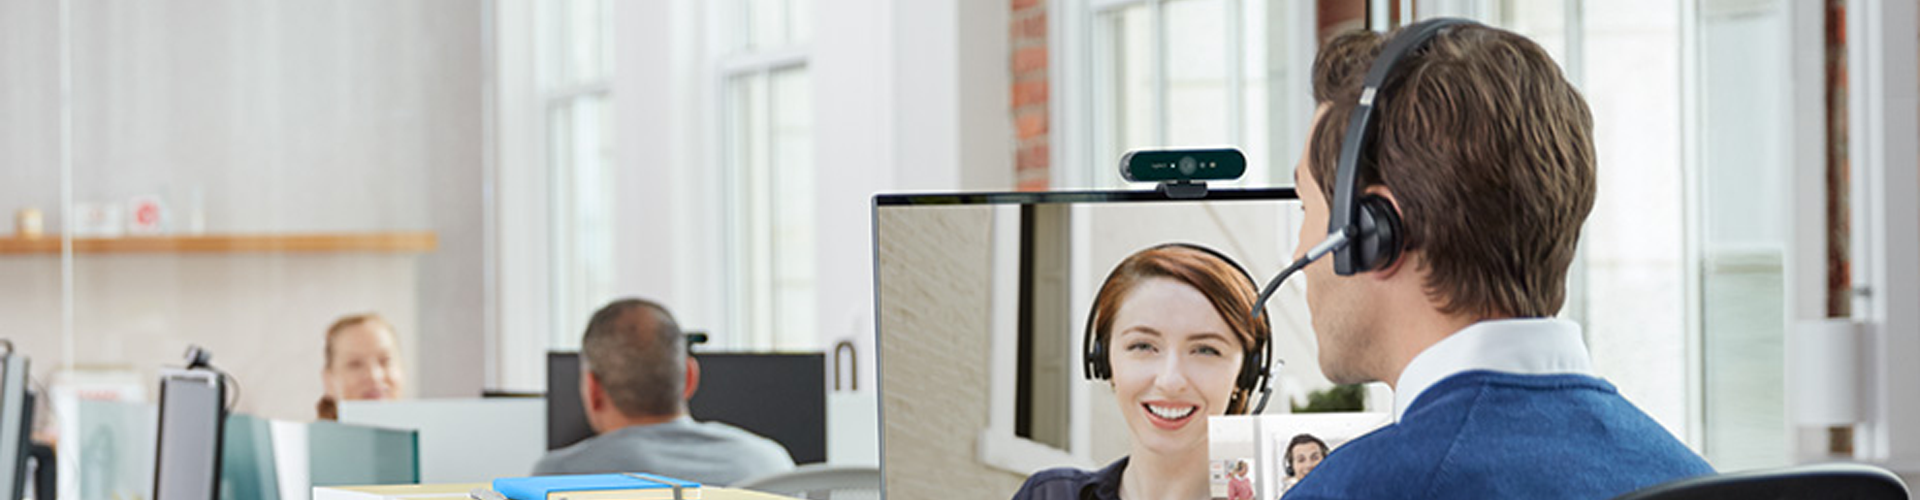 Sơ lược về chất lượng Webcam hội nghị Logitech Brio nhỏ gọn